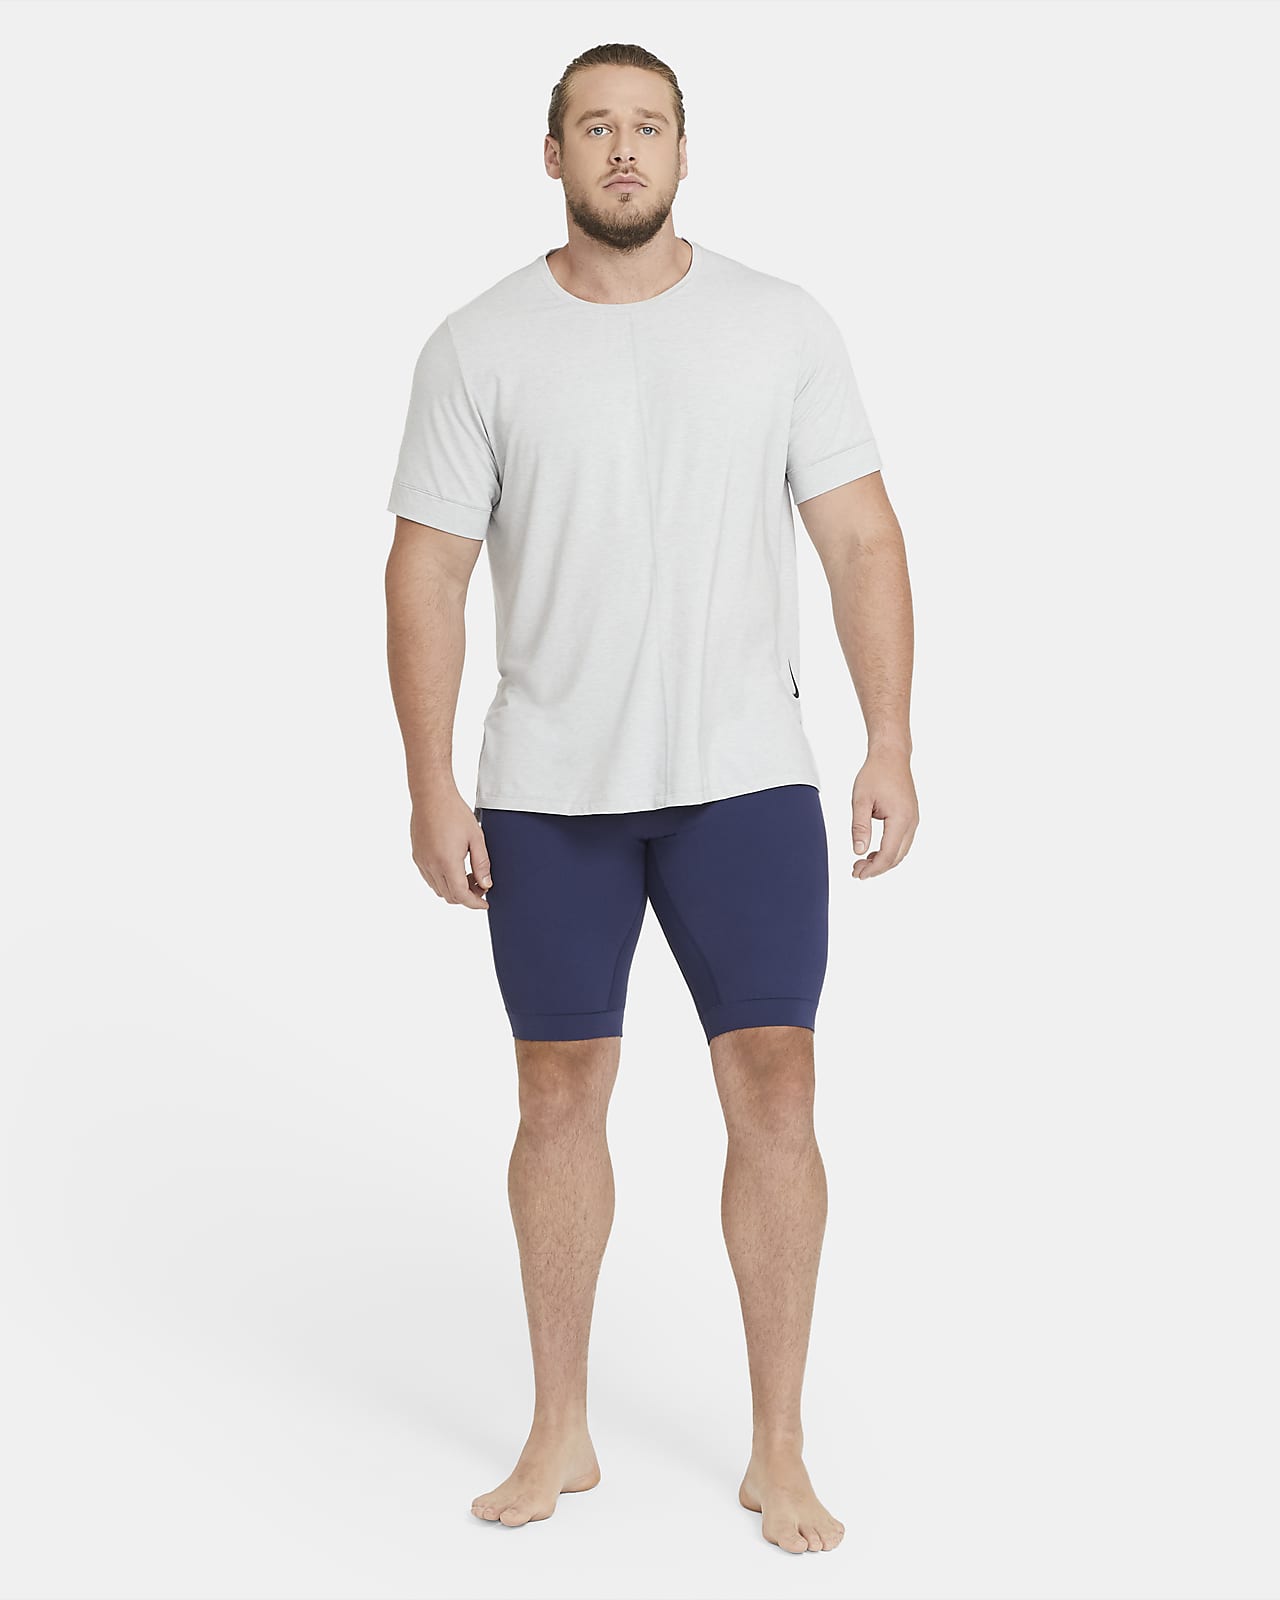 nike men's yoga shorts